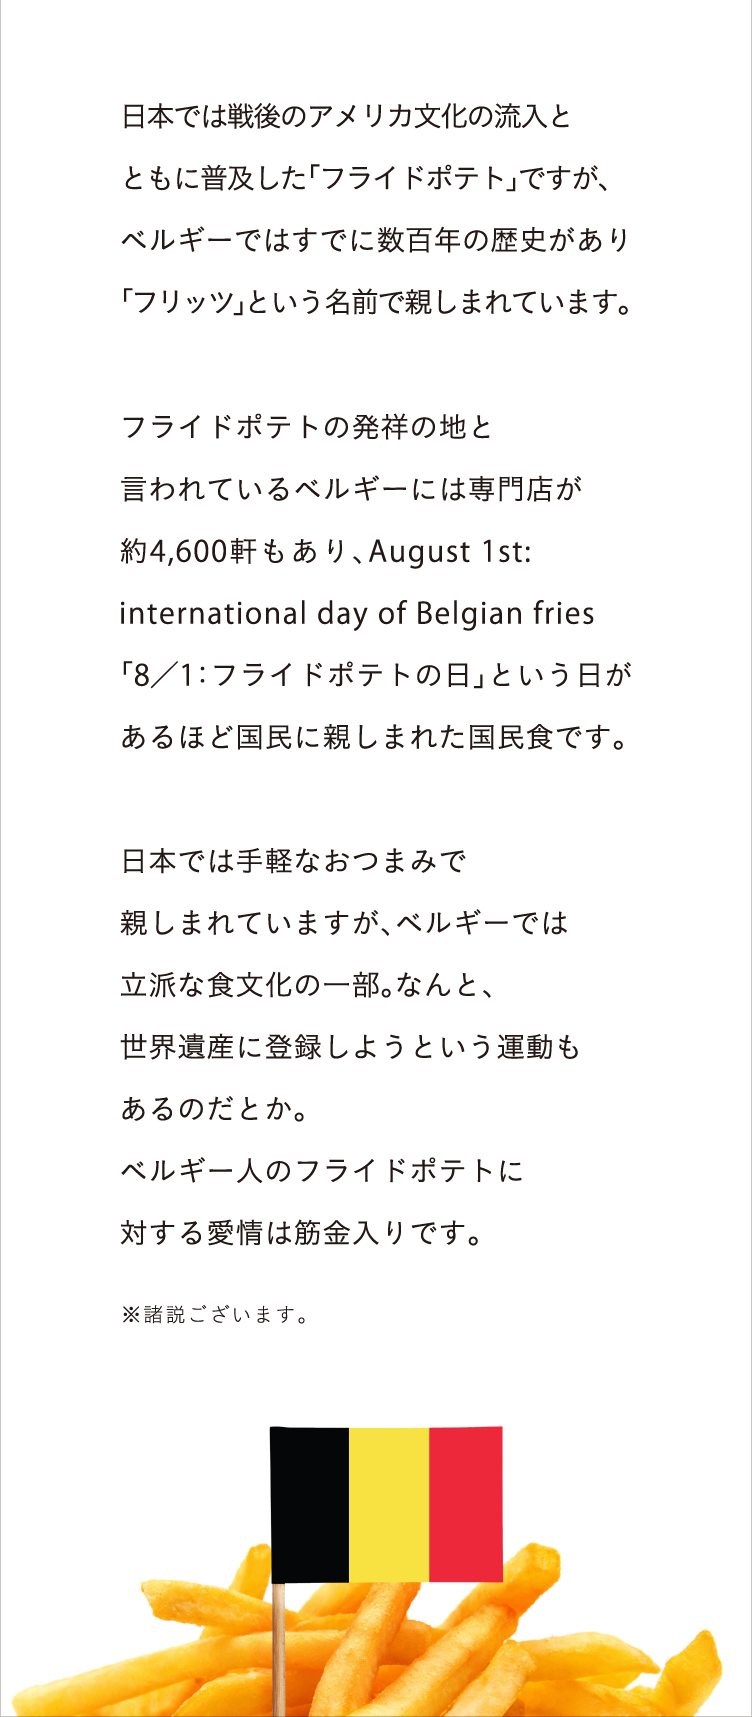 ベルギーとフライドポテトの関係 日本では戦後のアメリカ文化の流入とともに普及した「フライドポテト」ですが、ベルギーではすでに数百年の歴史があります。フライドポテトの発祥の地と言われている ベルギーには専門店が約4,600軒もあり、August 1st: international day of Belgian fries「8／1：フライドポテトの日」という日があるほど国民に親しまれた国民食です。日本では手軽なおつまみで親しまれていますが、ベルギーでは立派な食文化の一部。なんと、世界遺産に登録しようという運動もあるのだとか。ベルギー人のフライドポテトに対する愛情は筋金入りです。 ※諸説ございます。